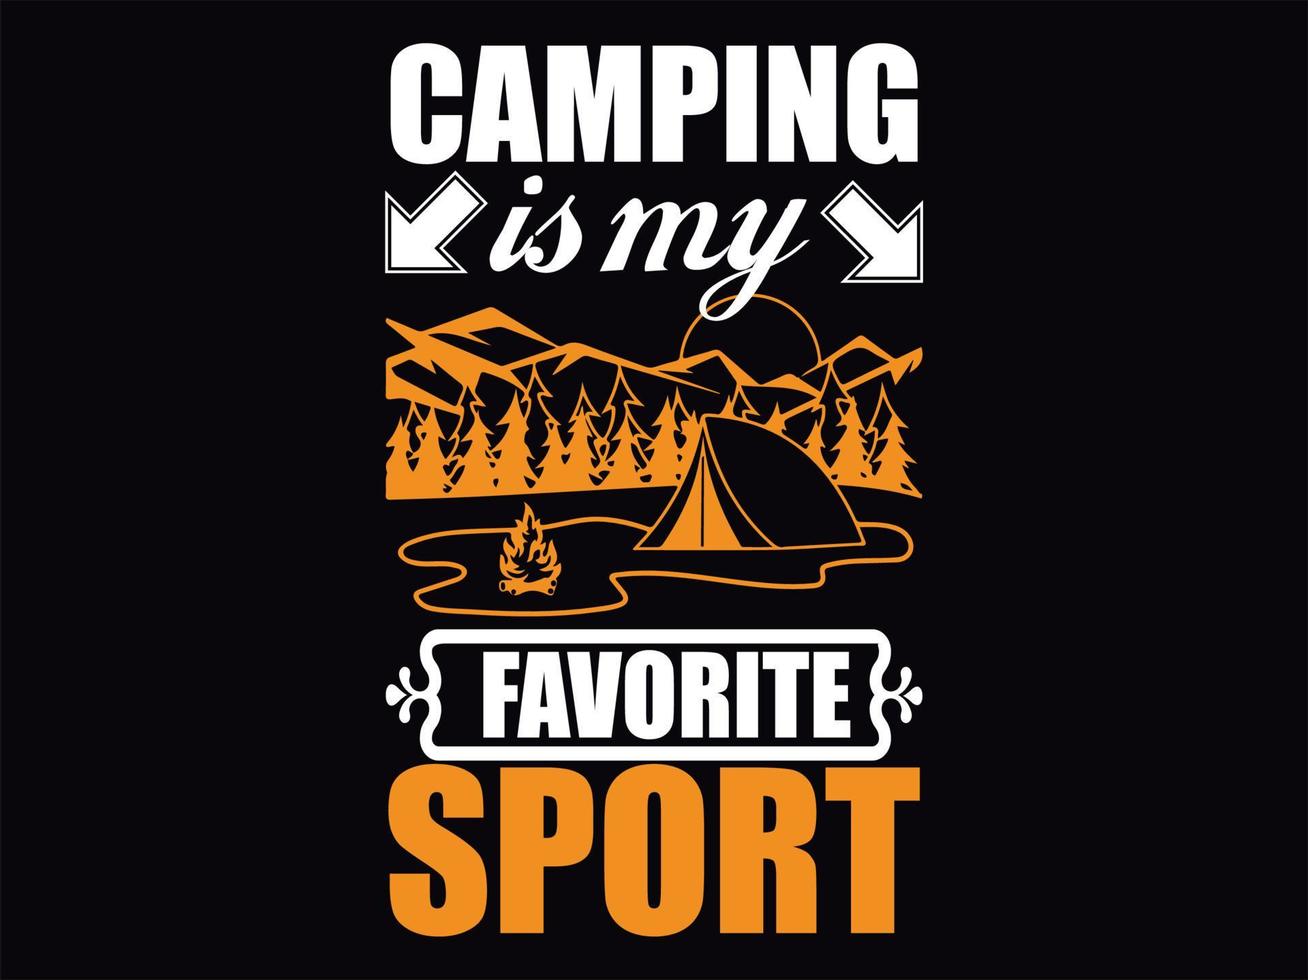 Designdatei für Camping-T-Shirts vektor